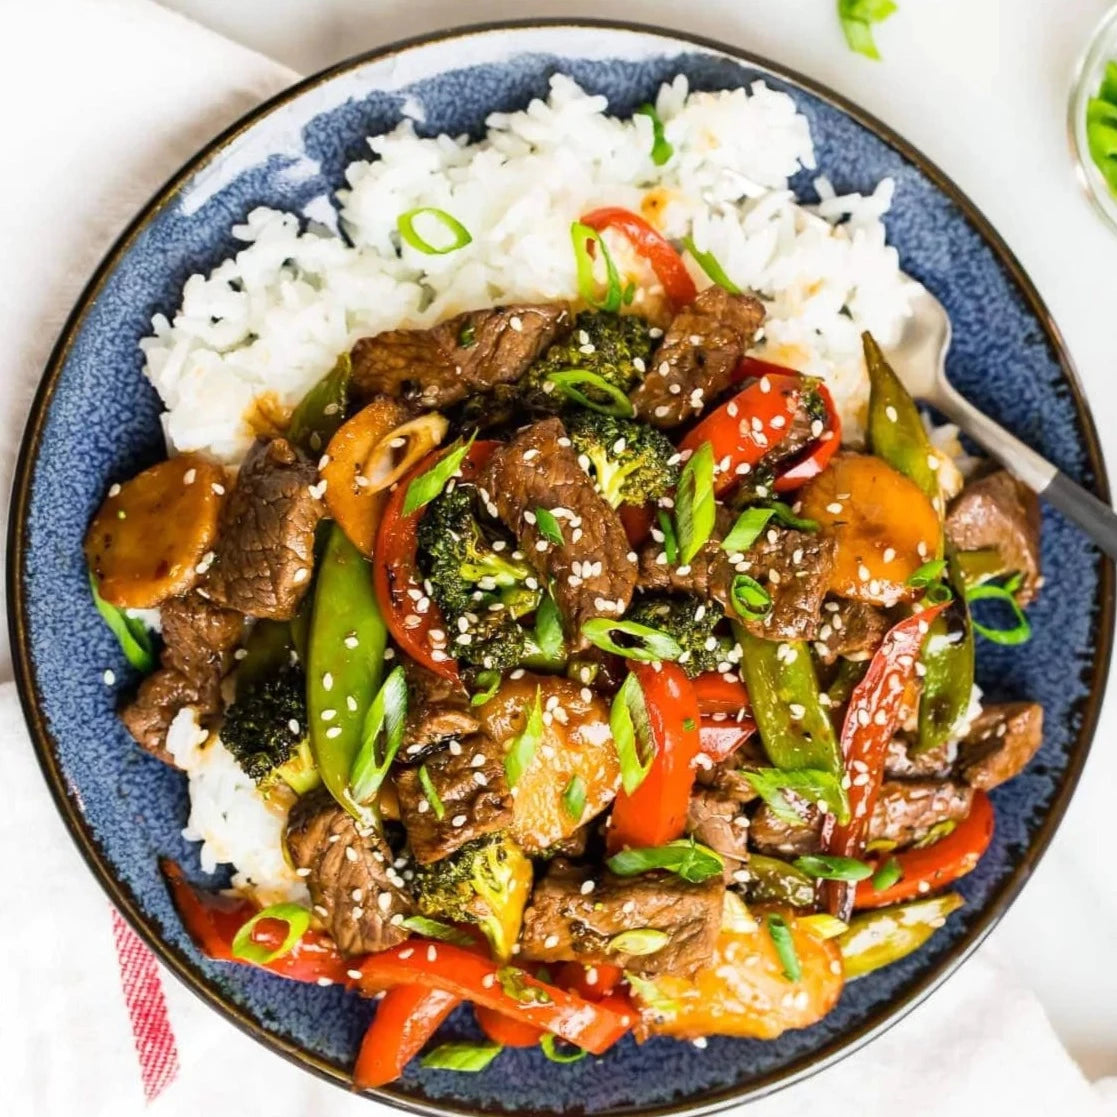 Veg 'Steak' Asian Stir Fry